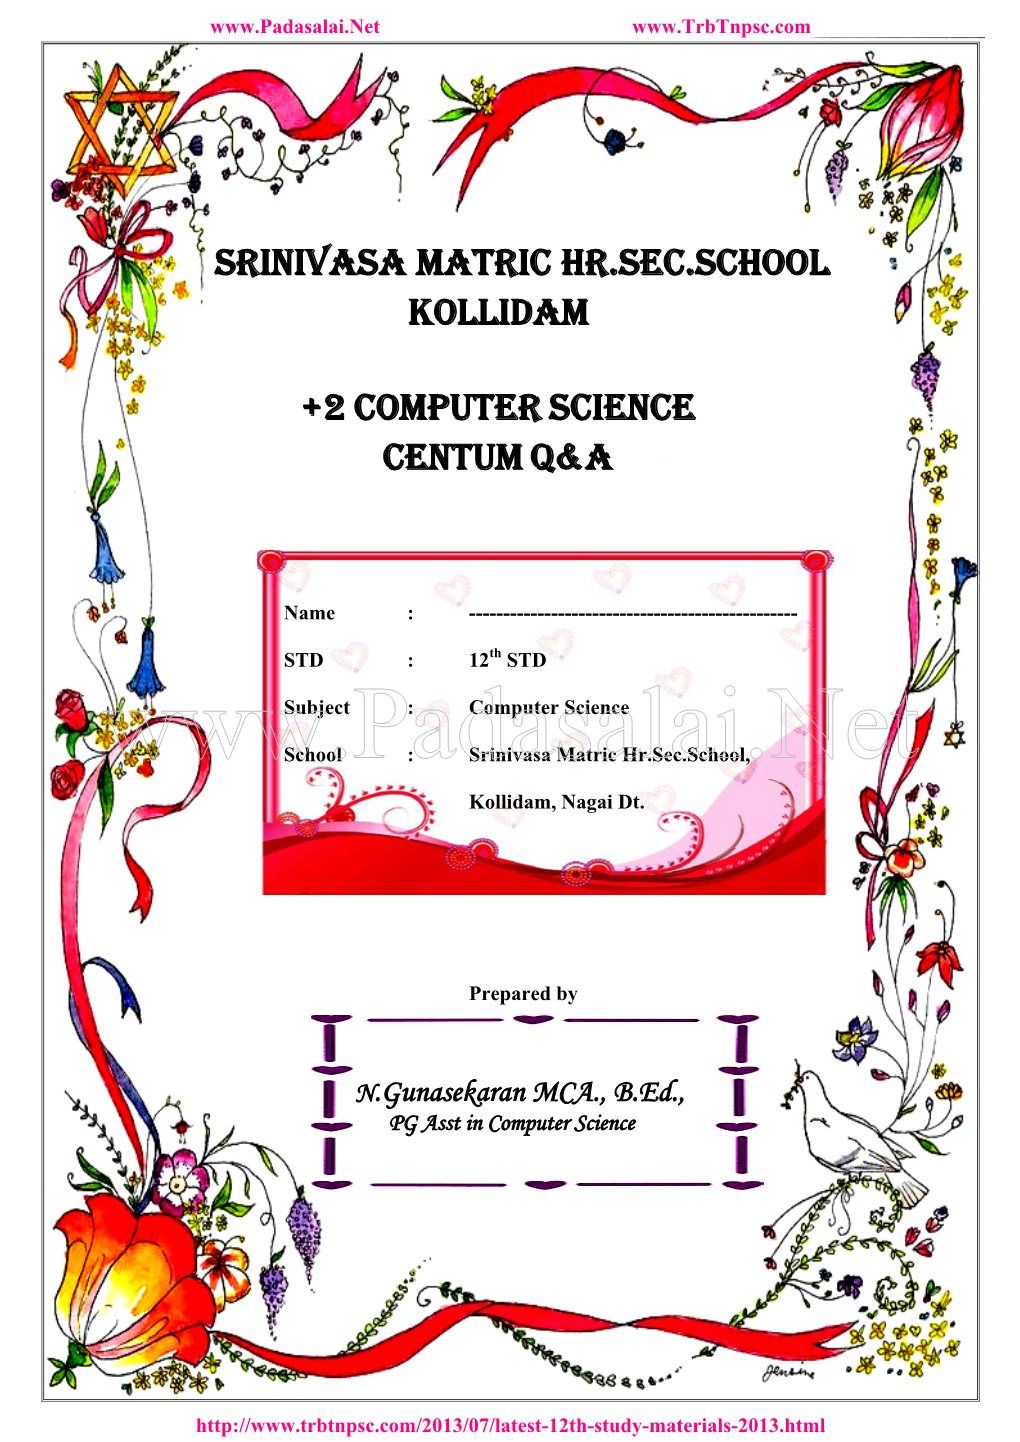 N.Gunasekaran MCA.,B.Ed, PG Asst in Computer Science